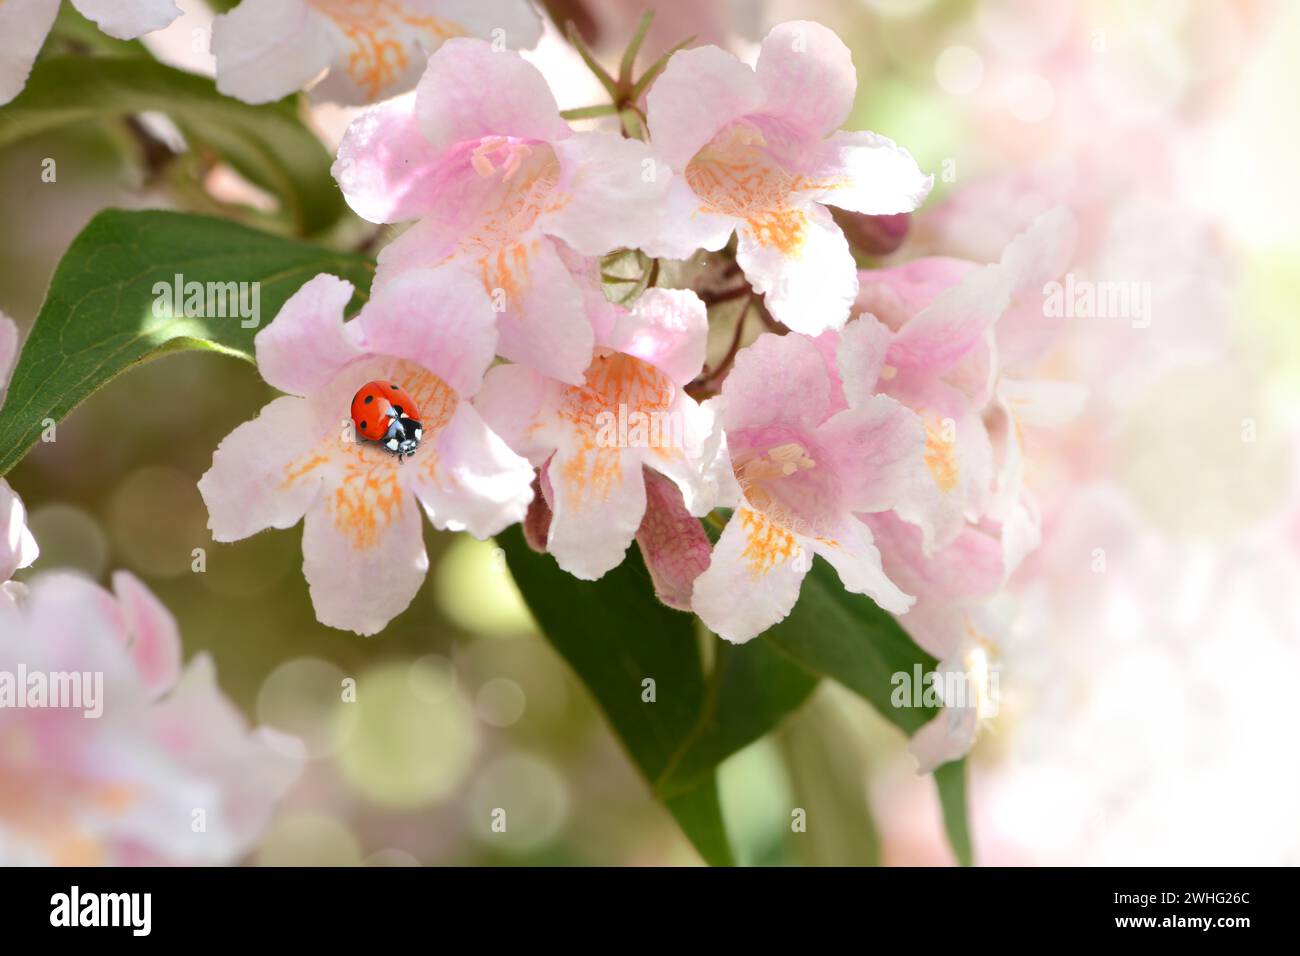 Ladybugs on blossom Stock Photo